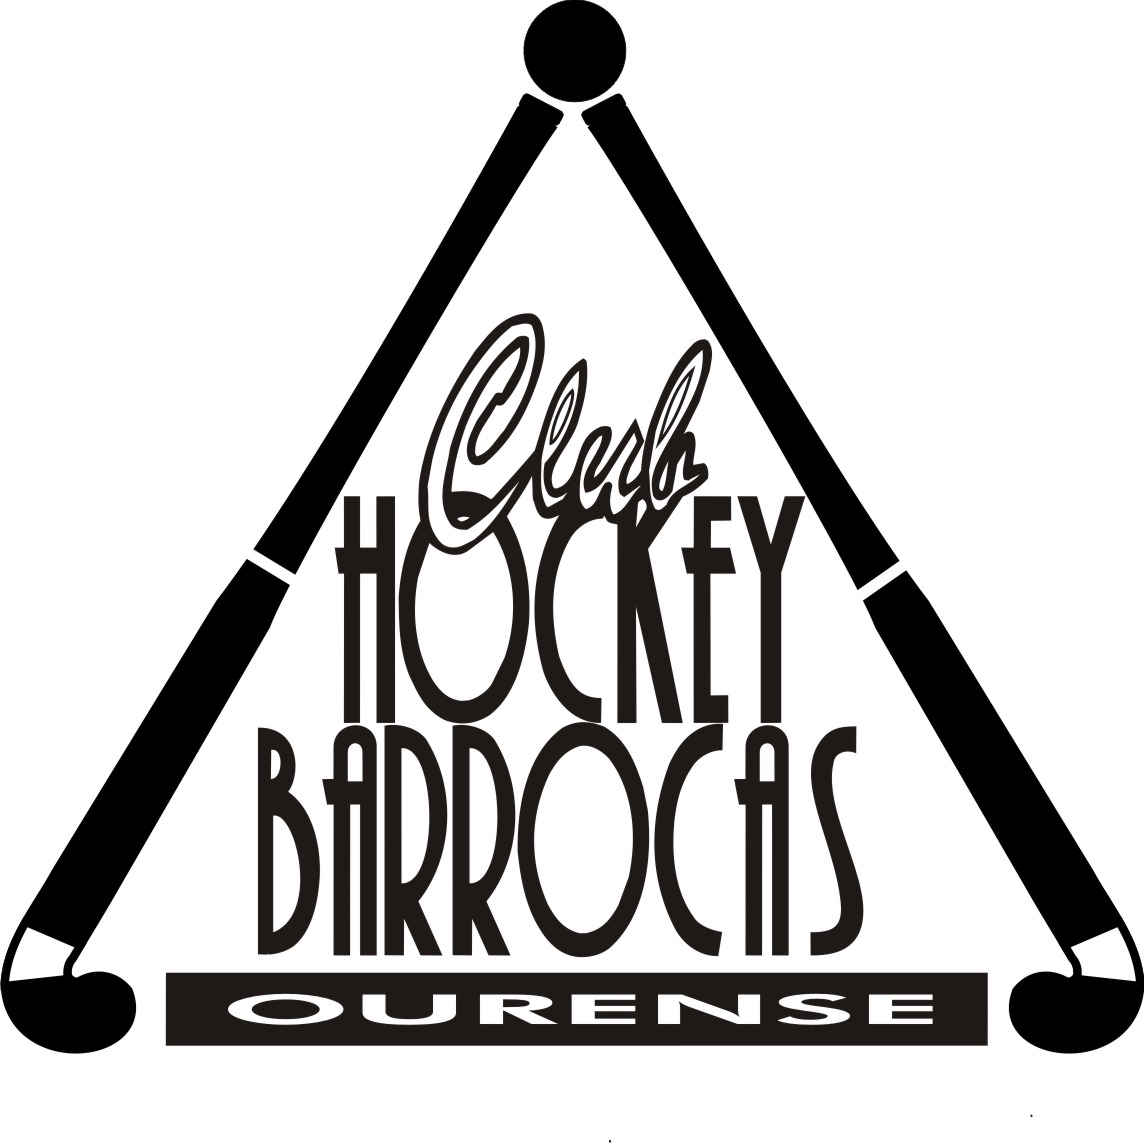 club hockey barrocas